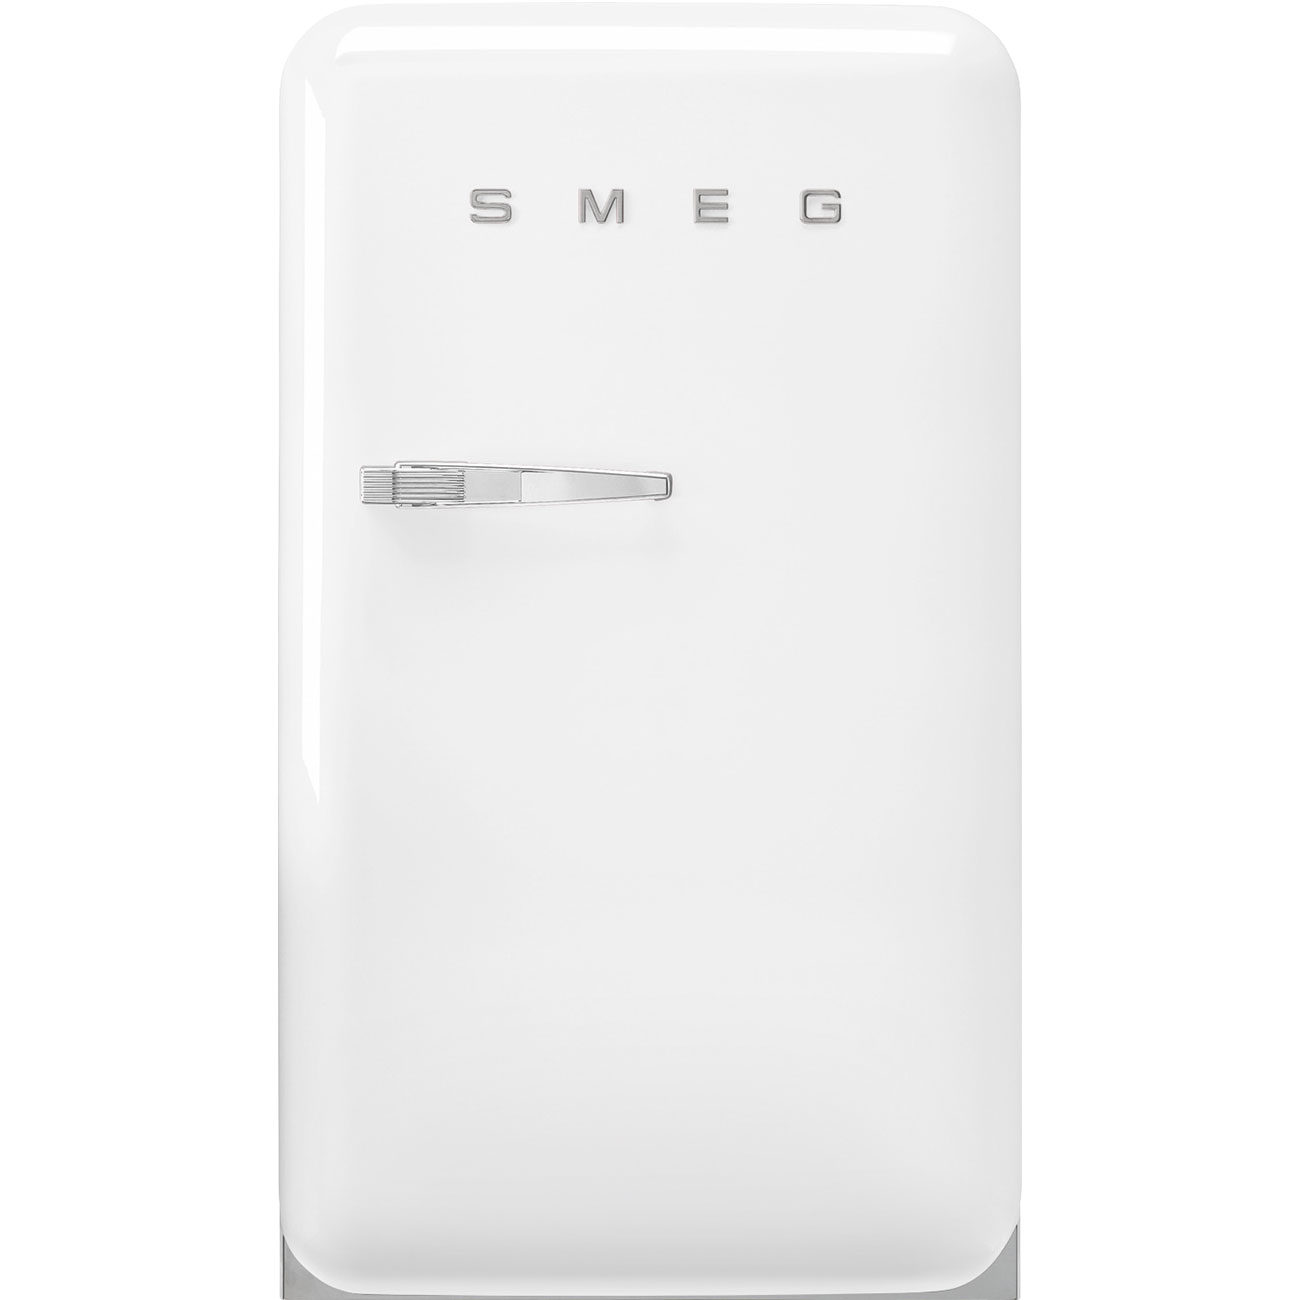 White refrigerator - Smeg_1